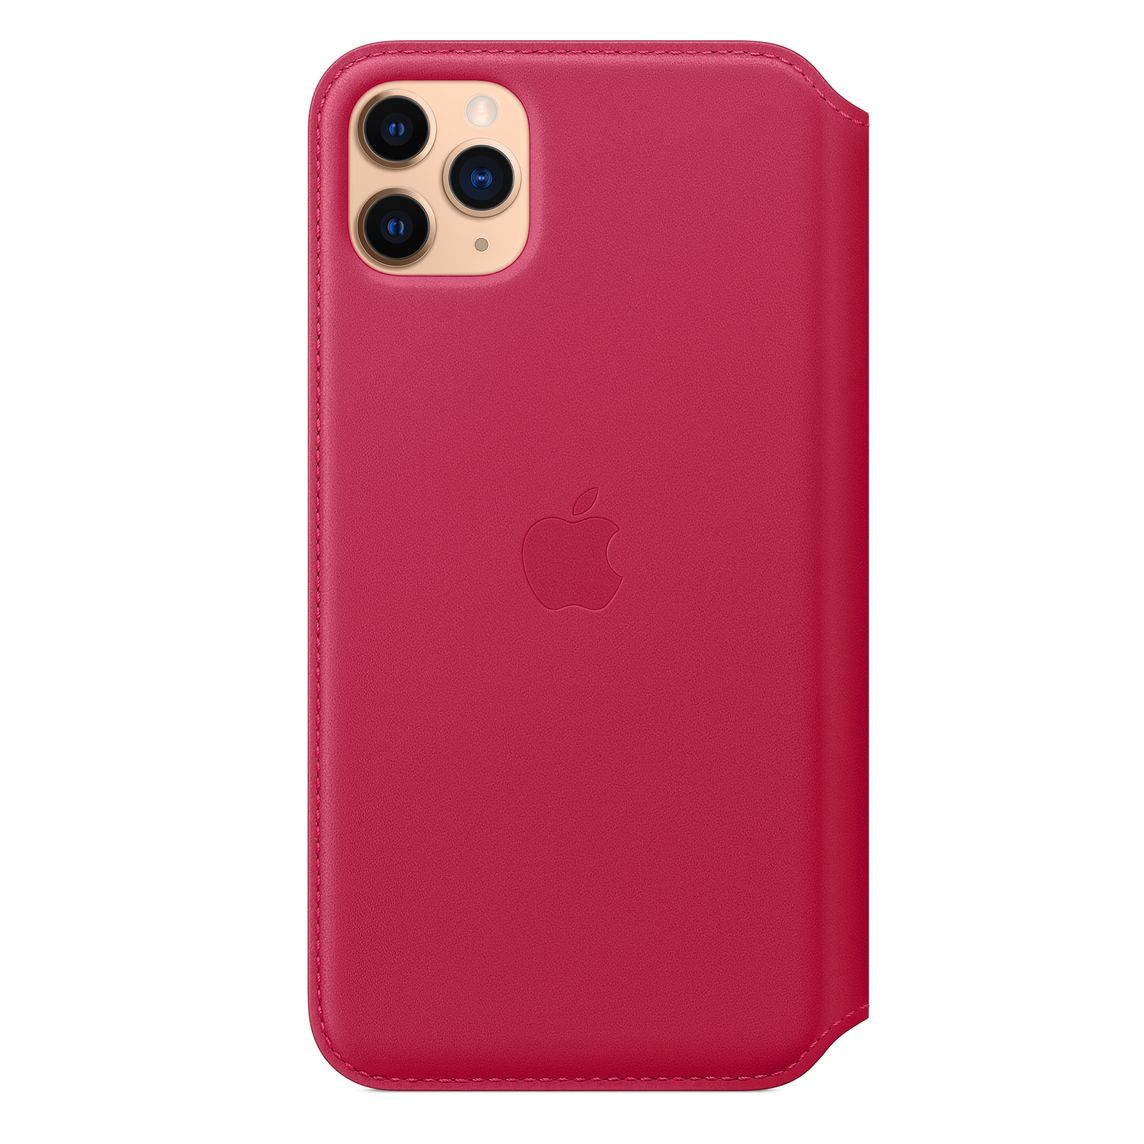 Фото — Чехол для смартфона Folio для iPhone 11 Pro Max, кожа, малиновый